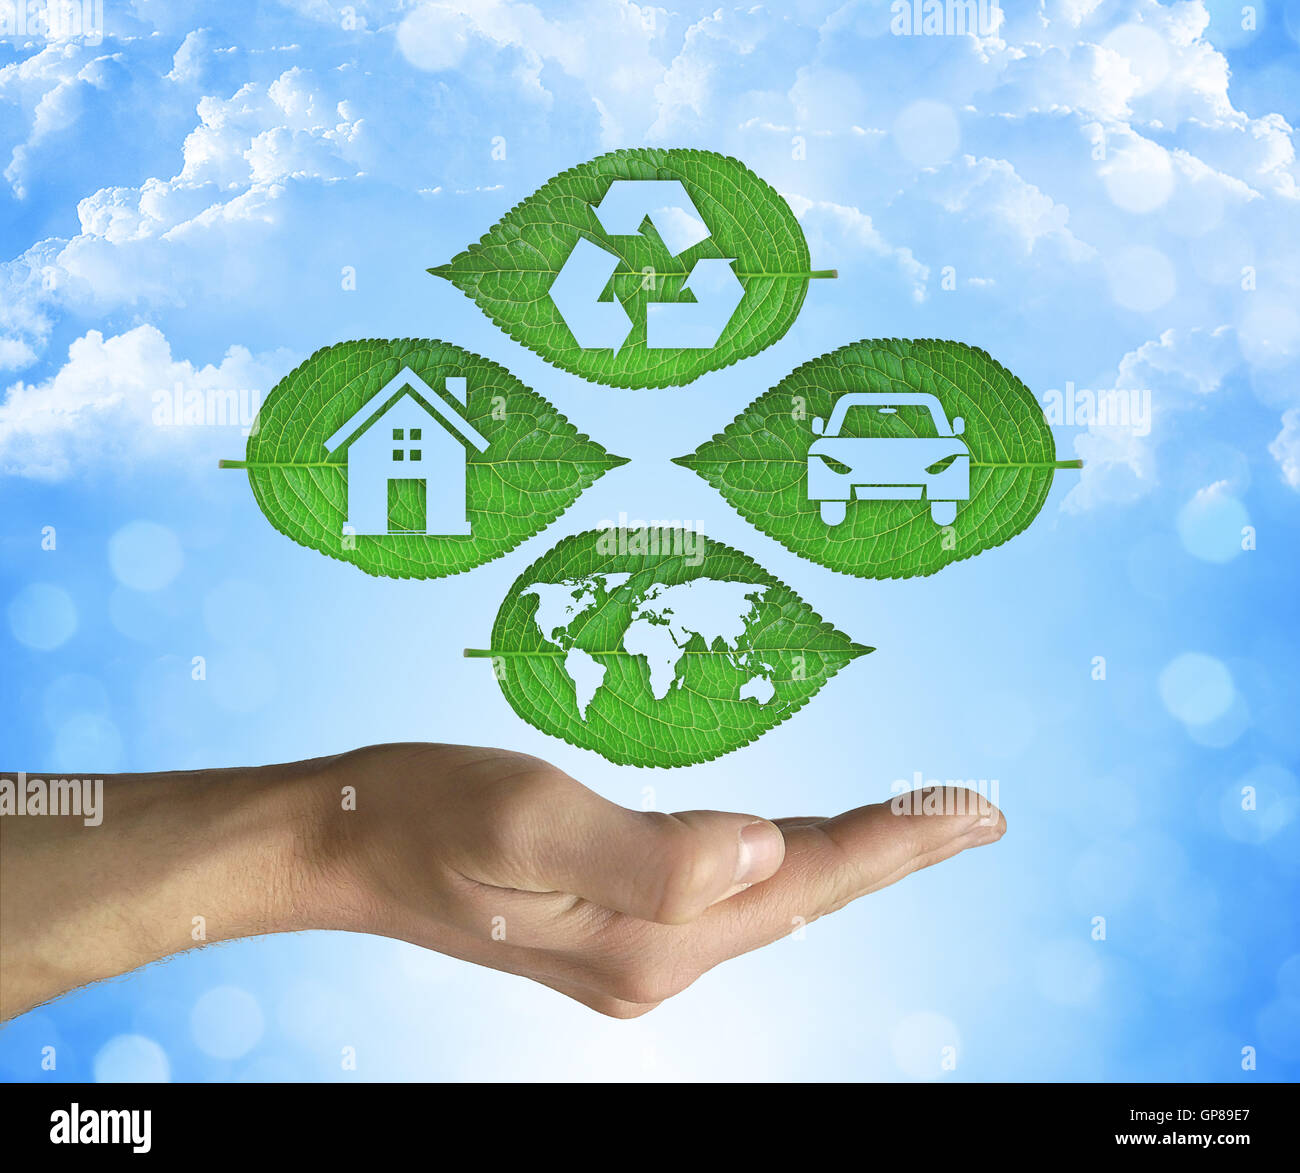 Ouvert main tenant une feuille verte avec symbole de recyclage sur un fond de ciel bleu. Développement durable et environnement convivial Banque D'Images